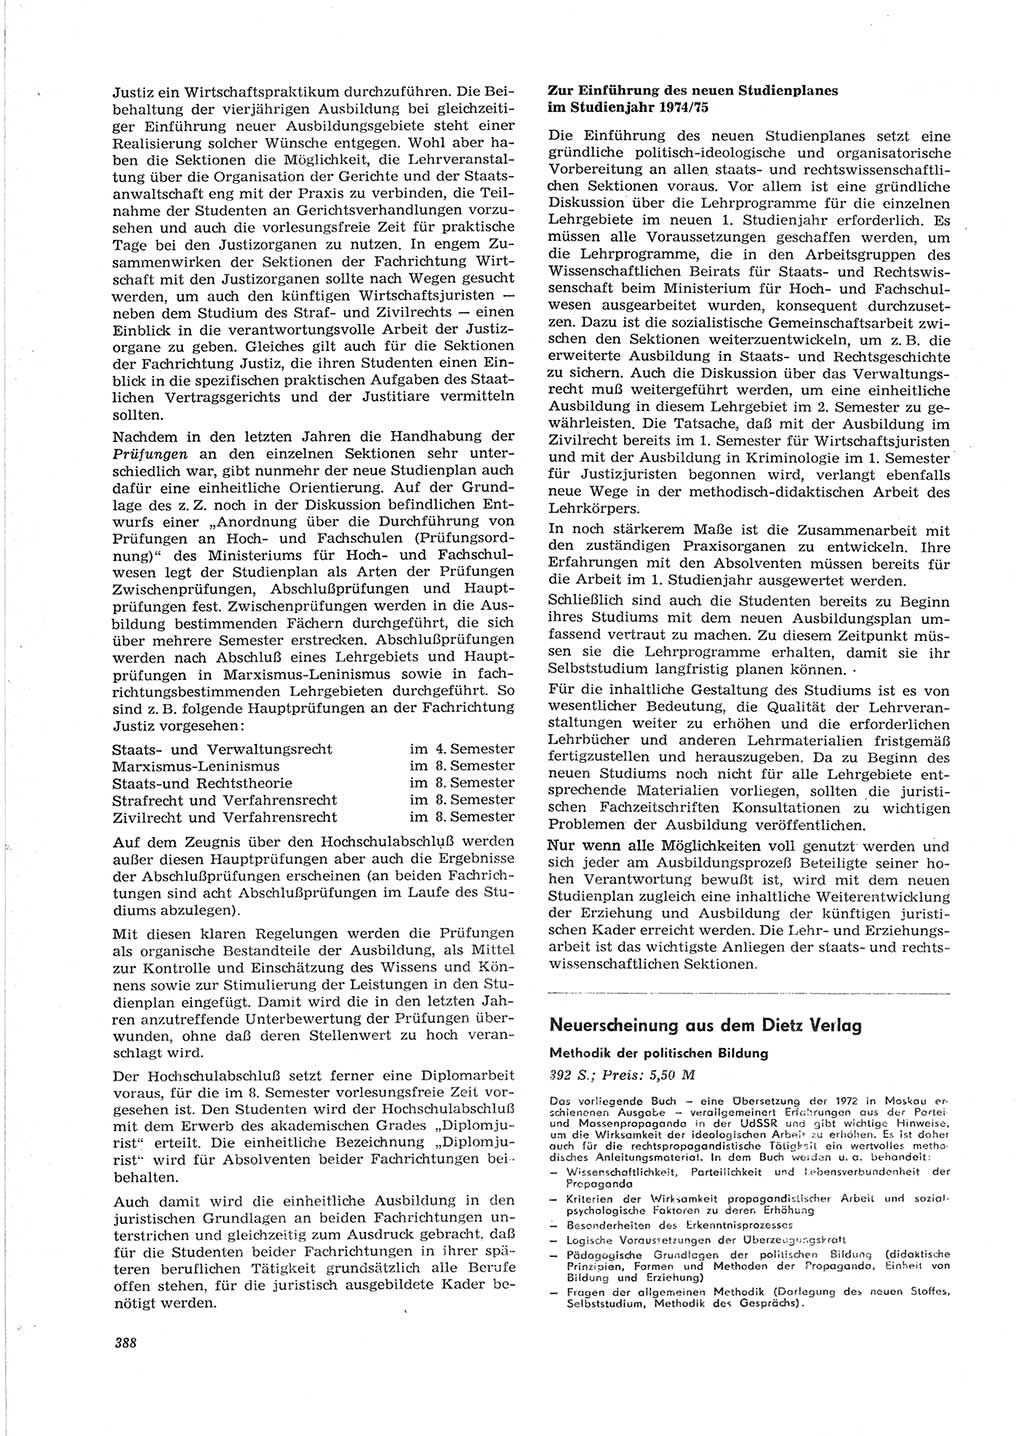 Neue Justiz (NJ), Zeitschrift für Recht und Rechtswissenschaft [Deutsche Demokratische Republik (DDR)], 28. Jahrgang 1974, Seite 388 (NJ DDR 1974, S. 388)